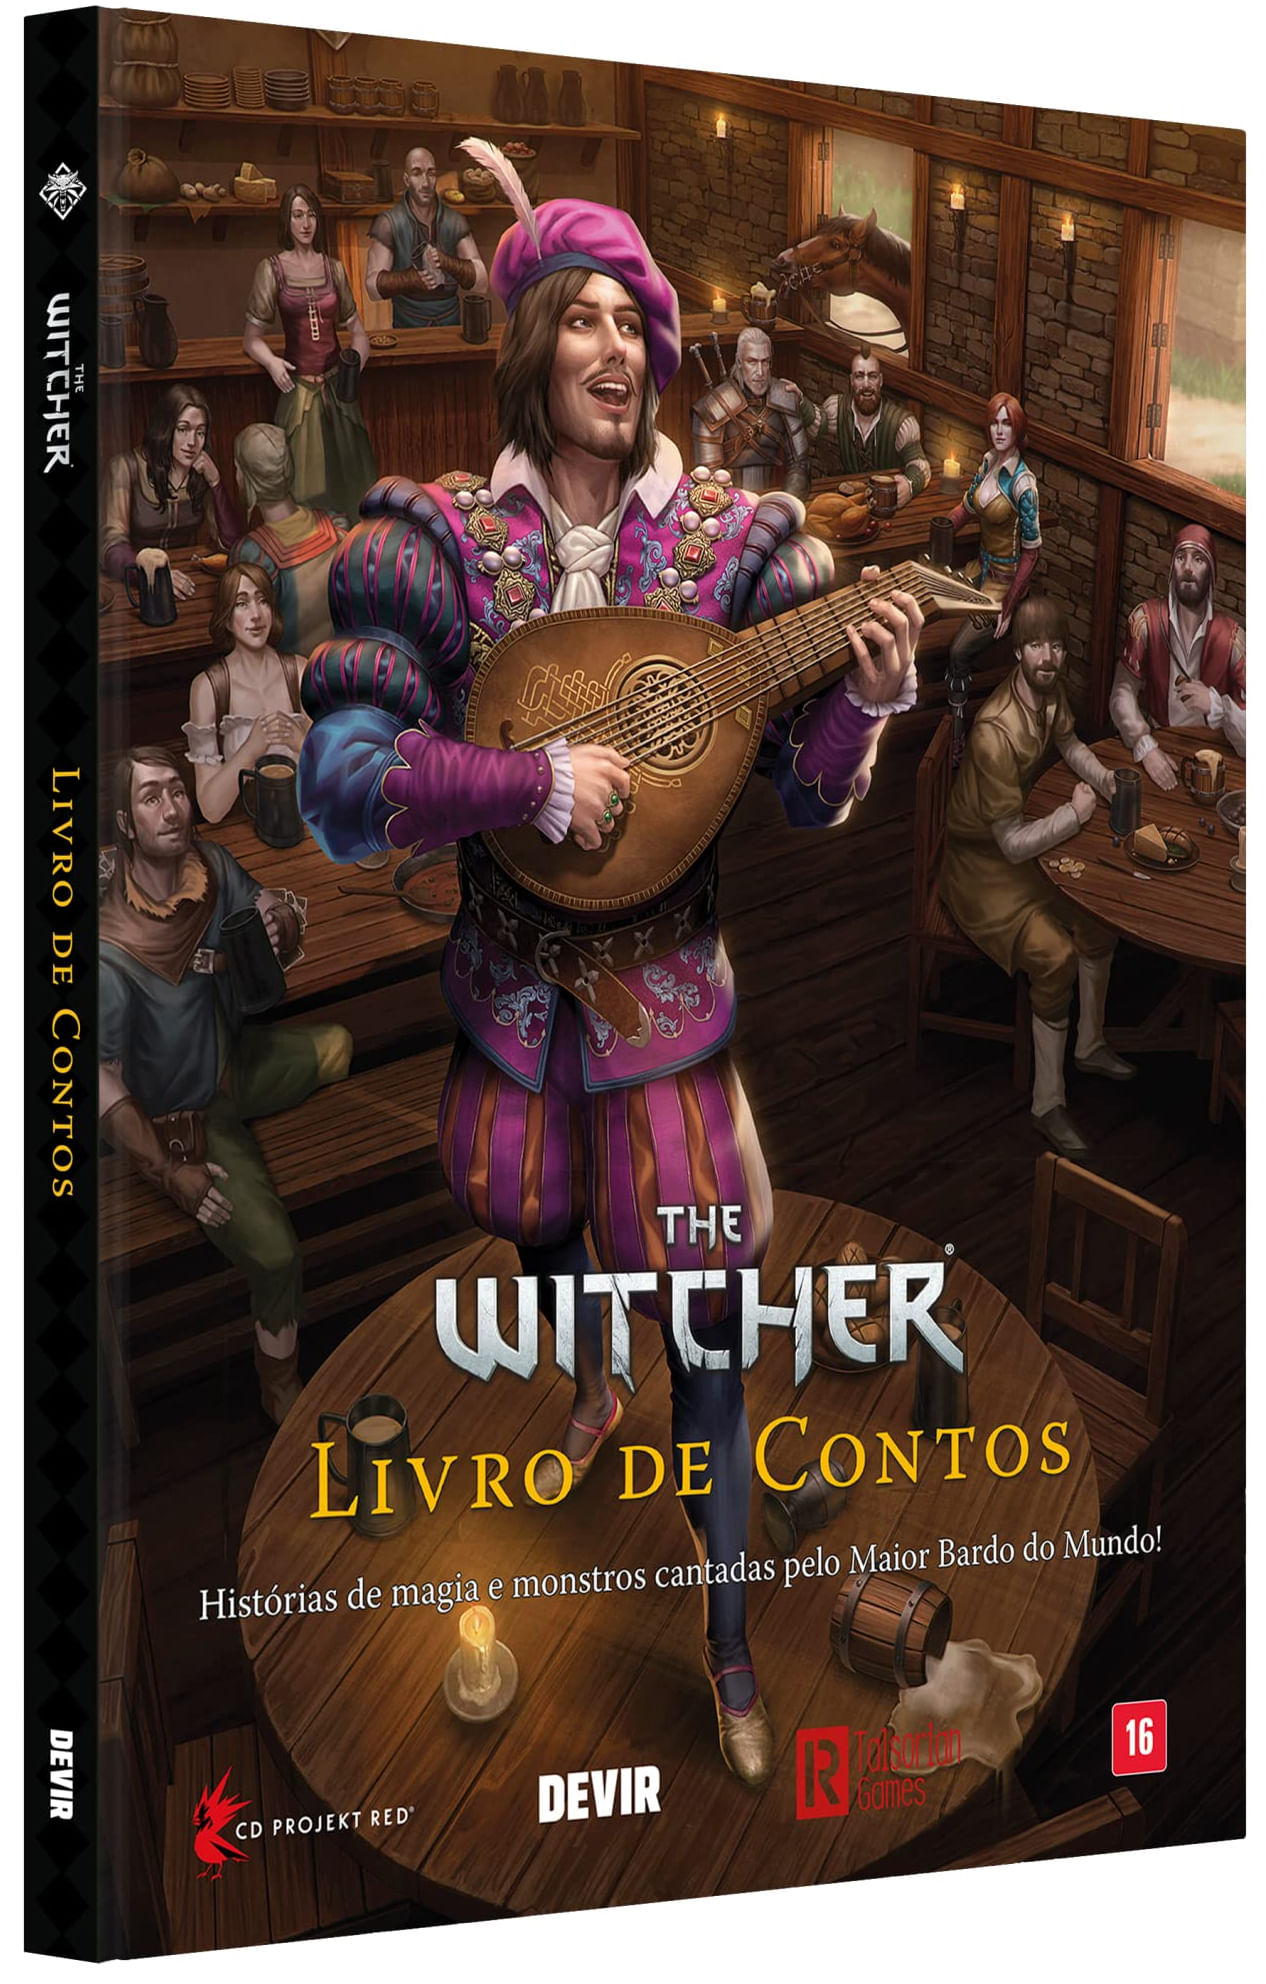 The Witcher - Livro de Contos